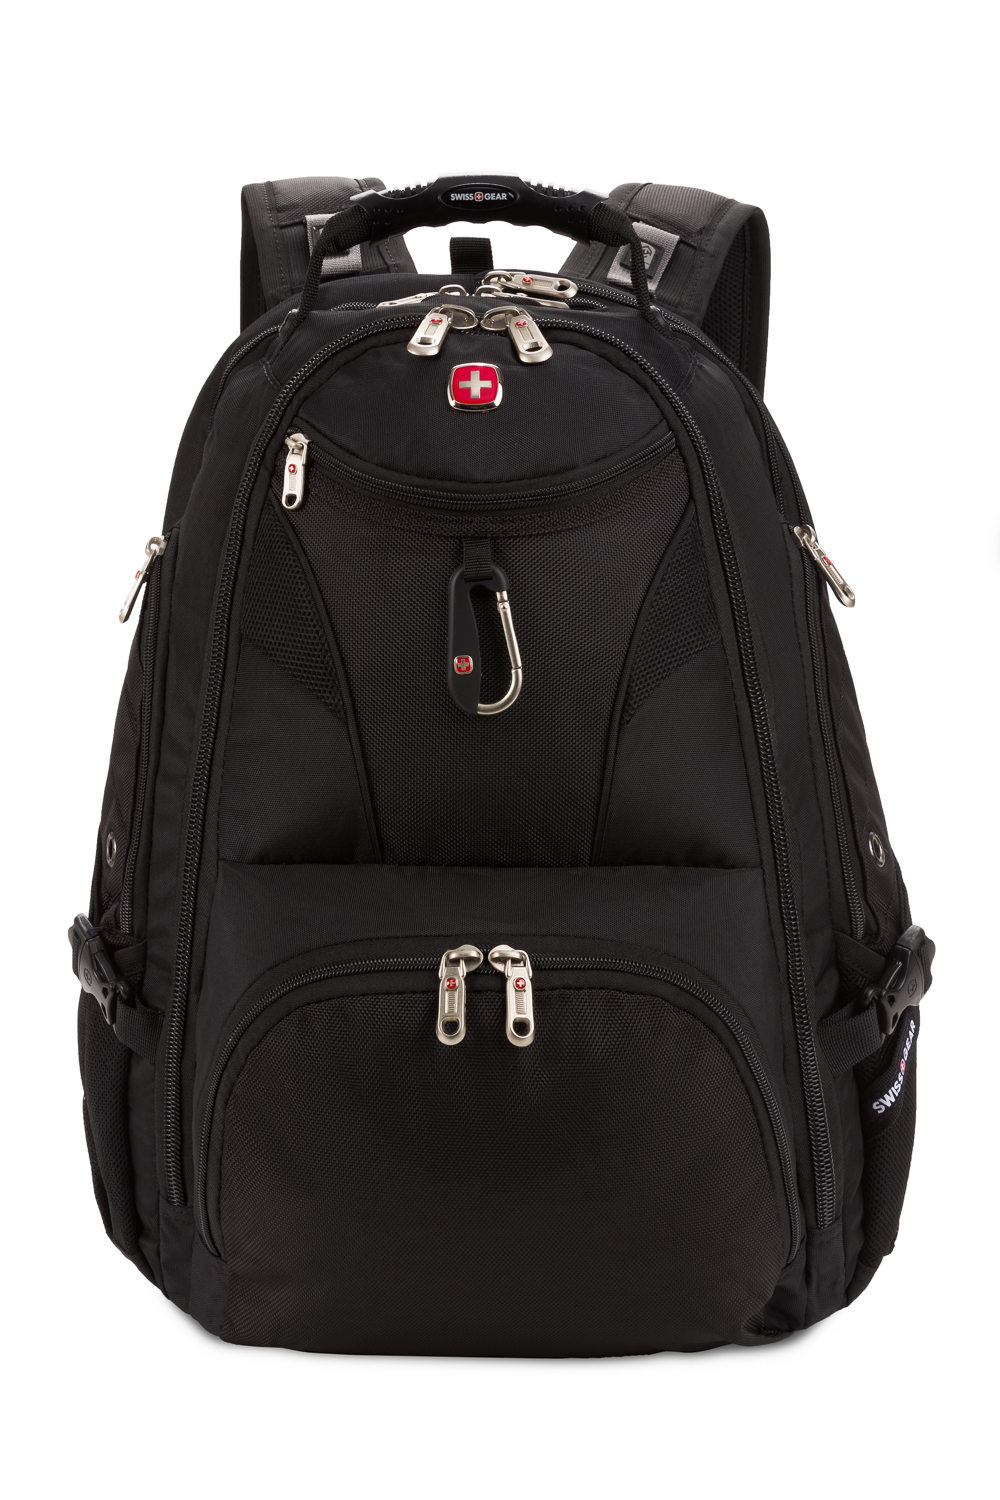 Swissgear 5977 ScanSmart Laptop Backpack